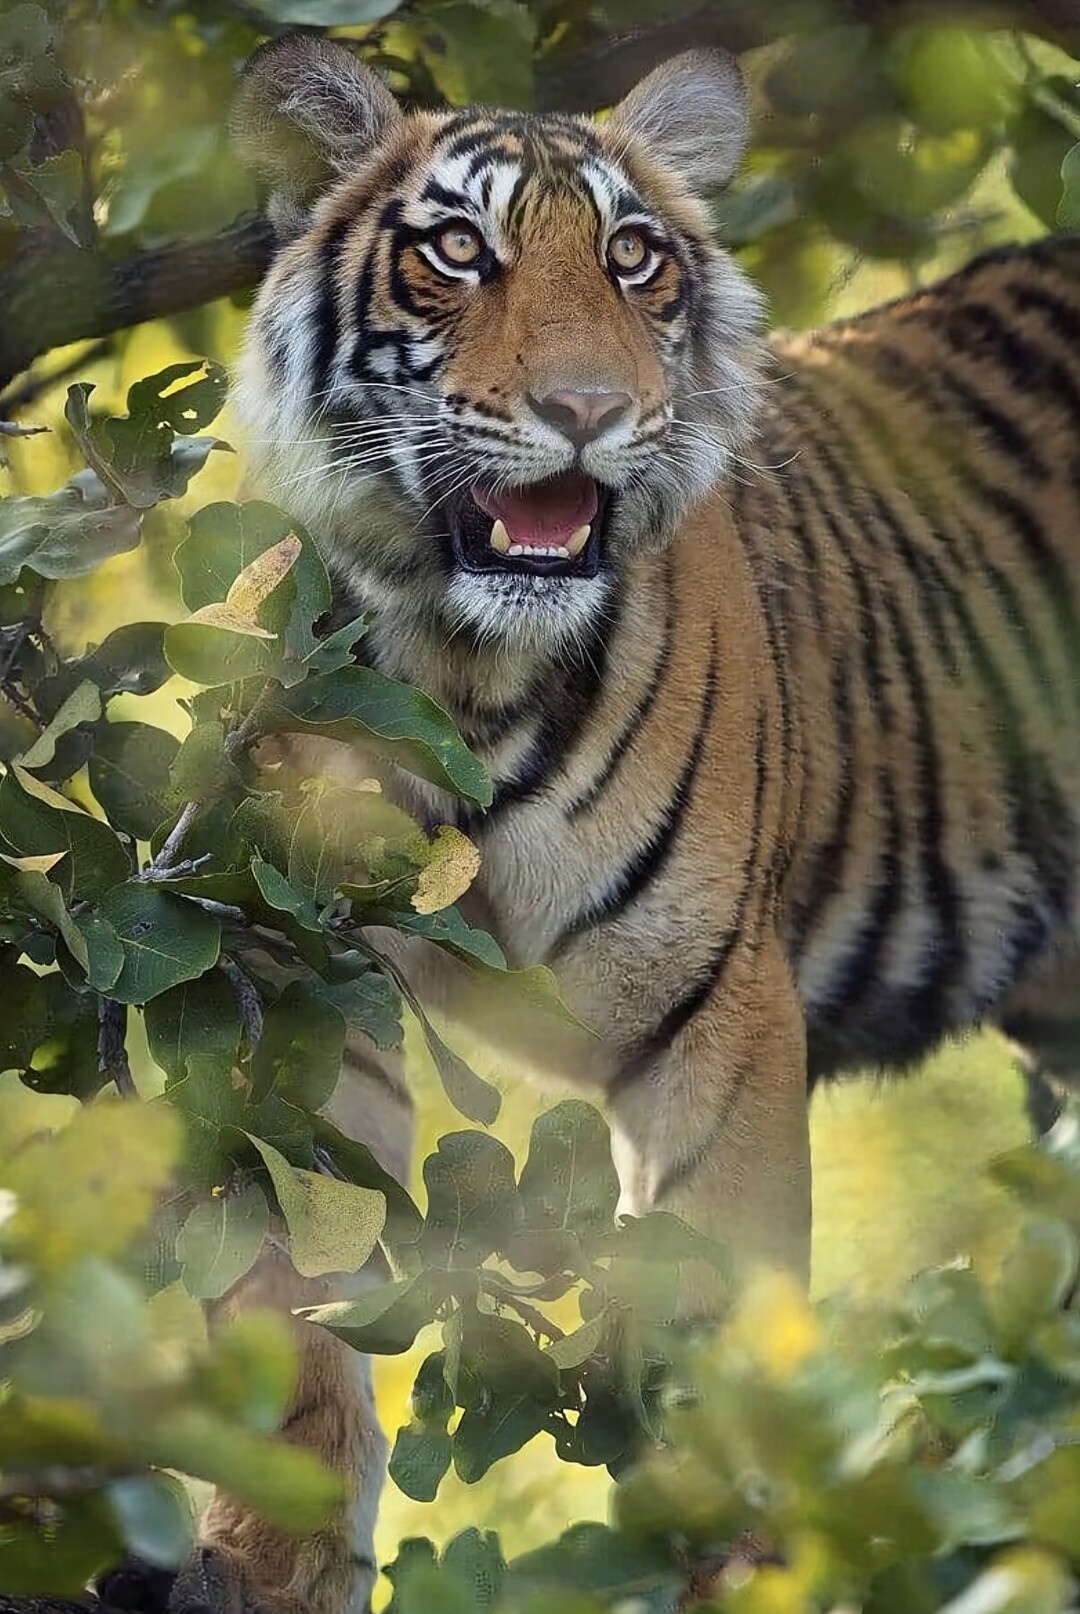 分享一组大自然的王者,凶猛霸气的老虎图集